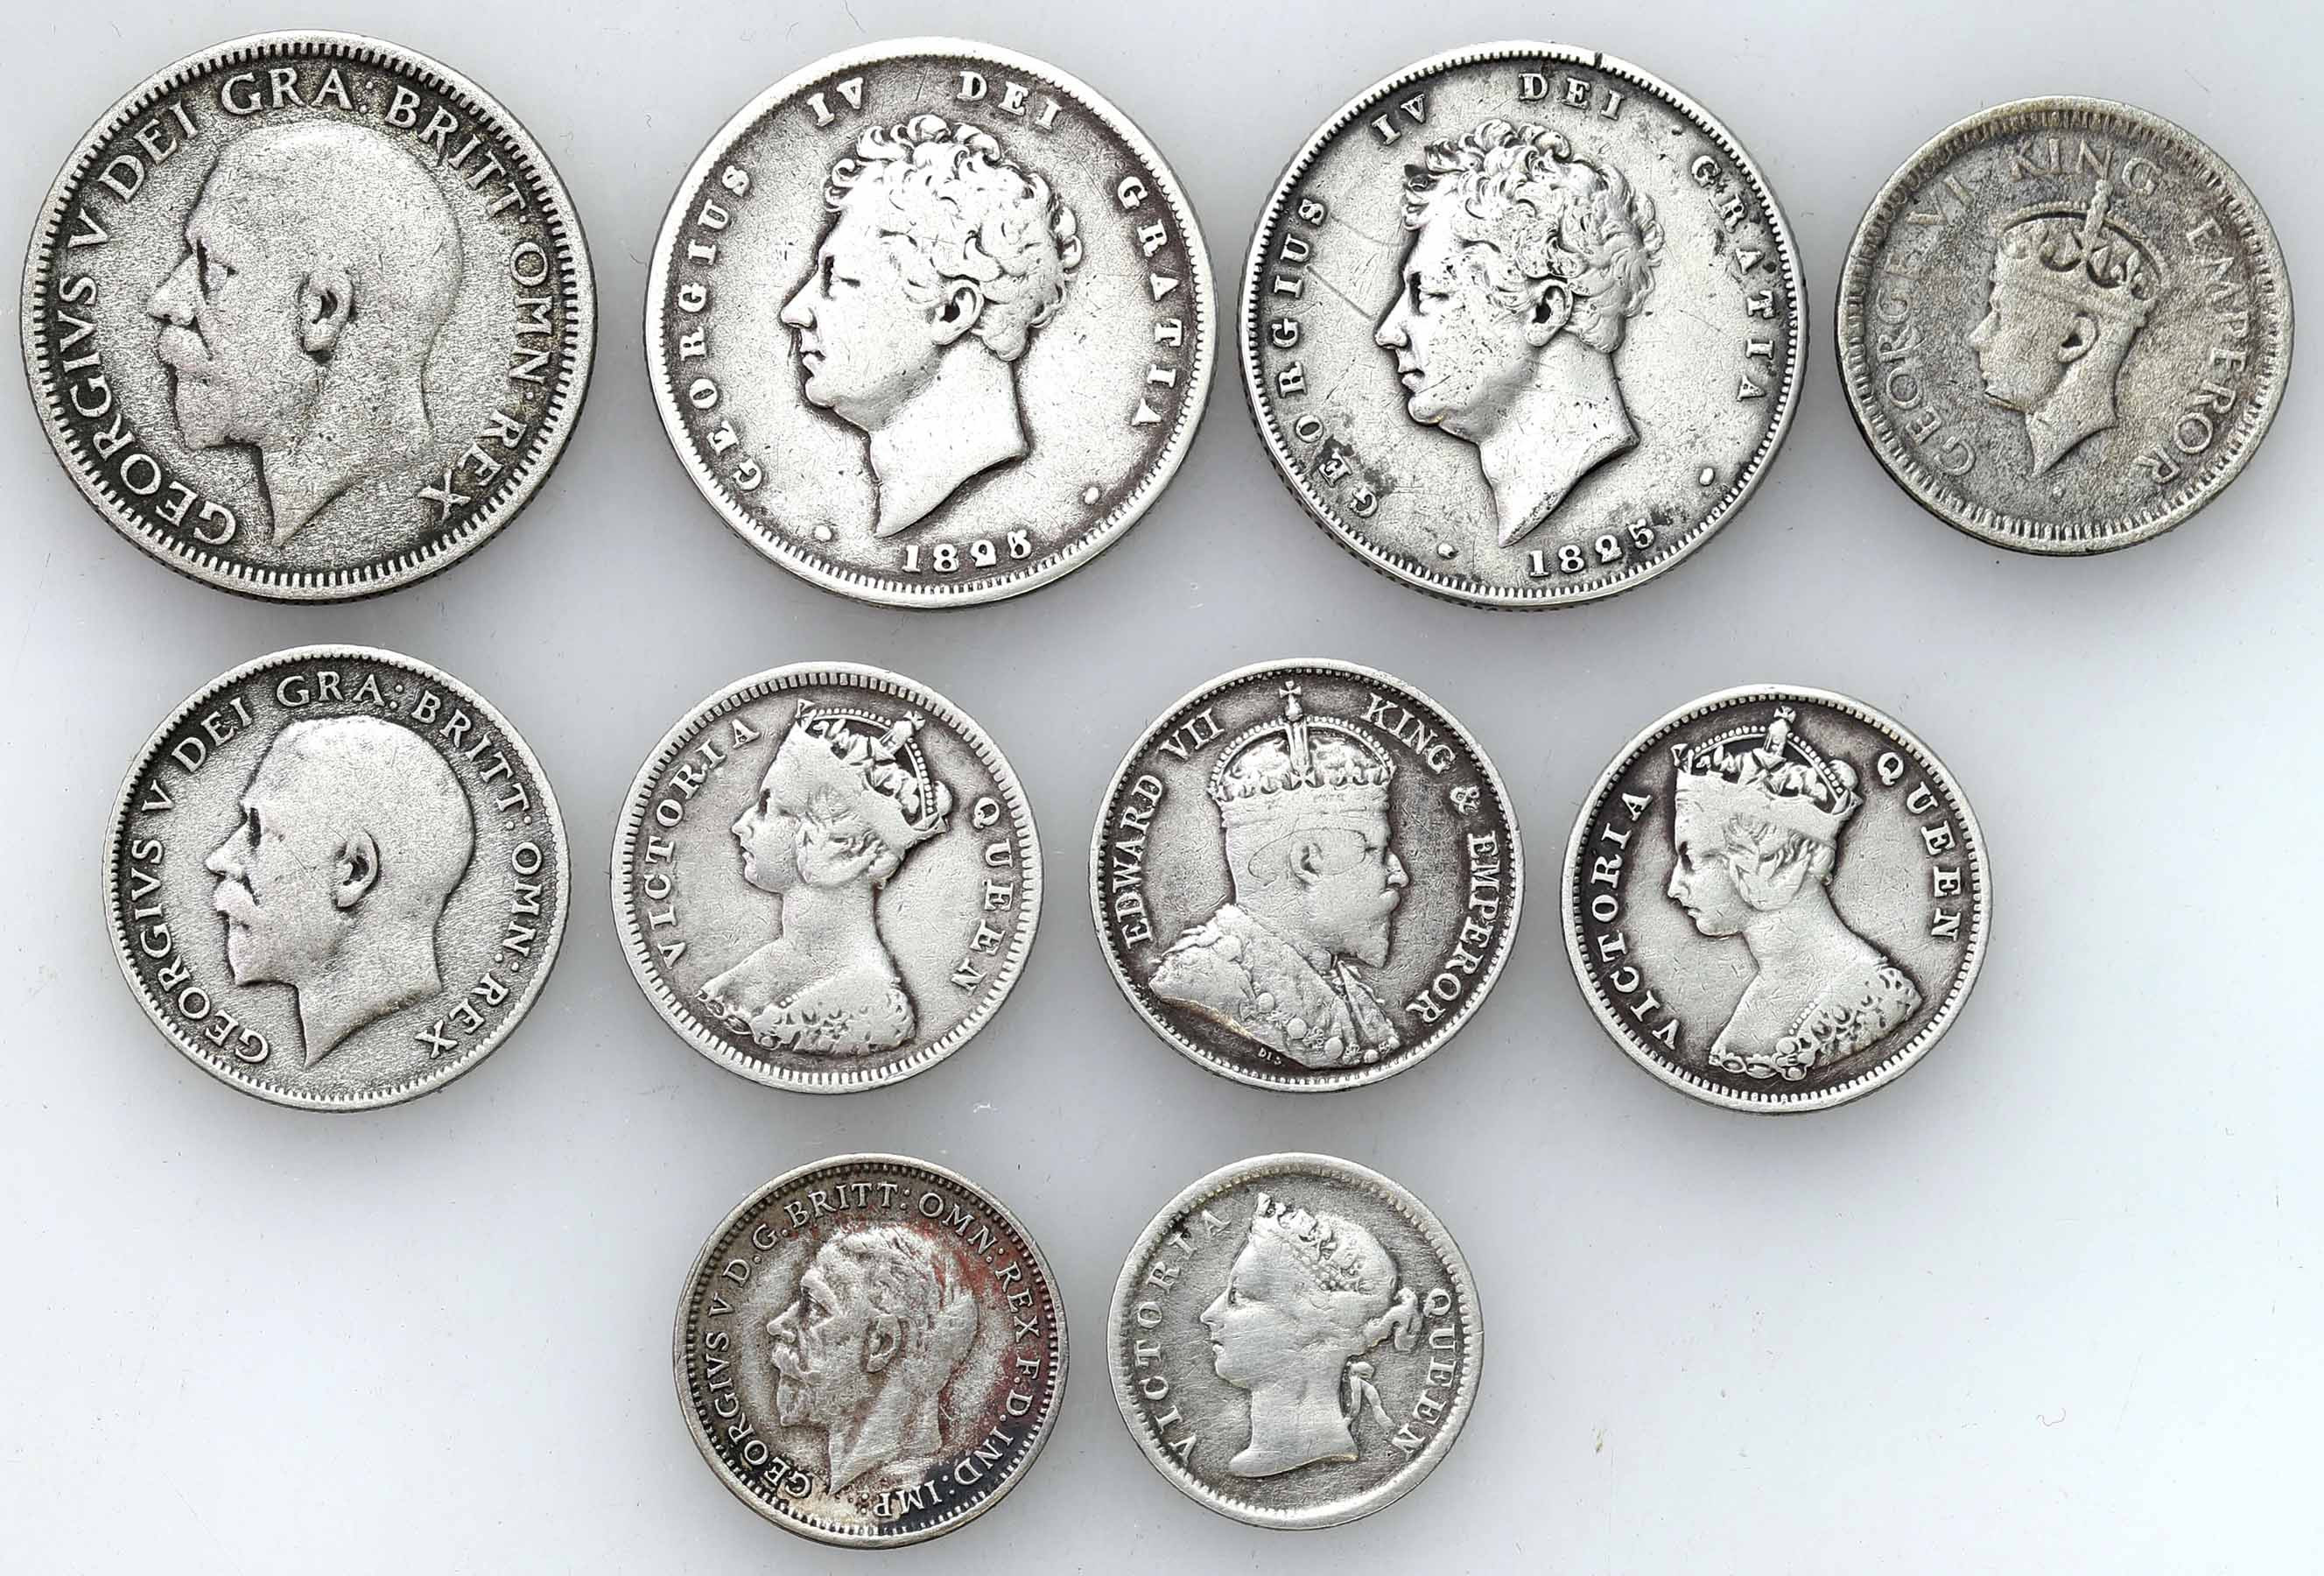 Wielka Brytania. 5 - 10 centów, 3 - 6 pence, shilling 1825 - 1944, zestaw 10 monet